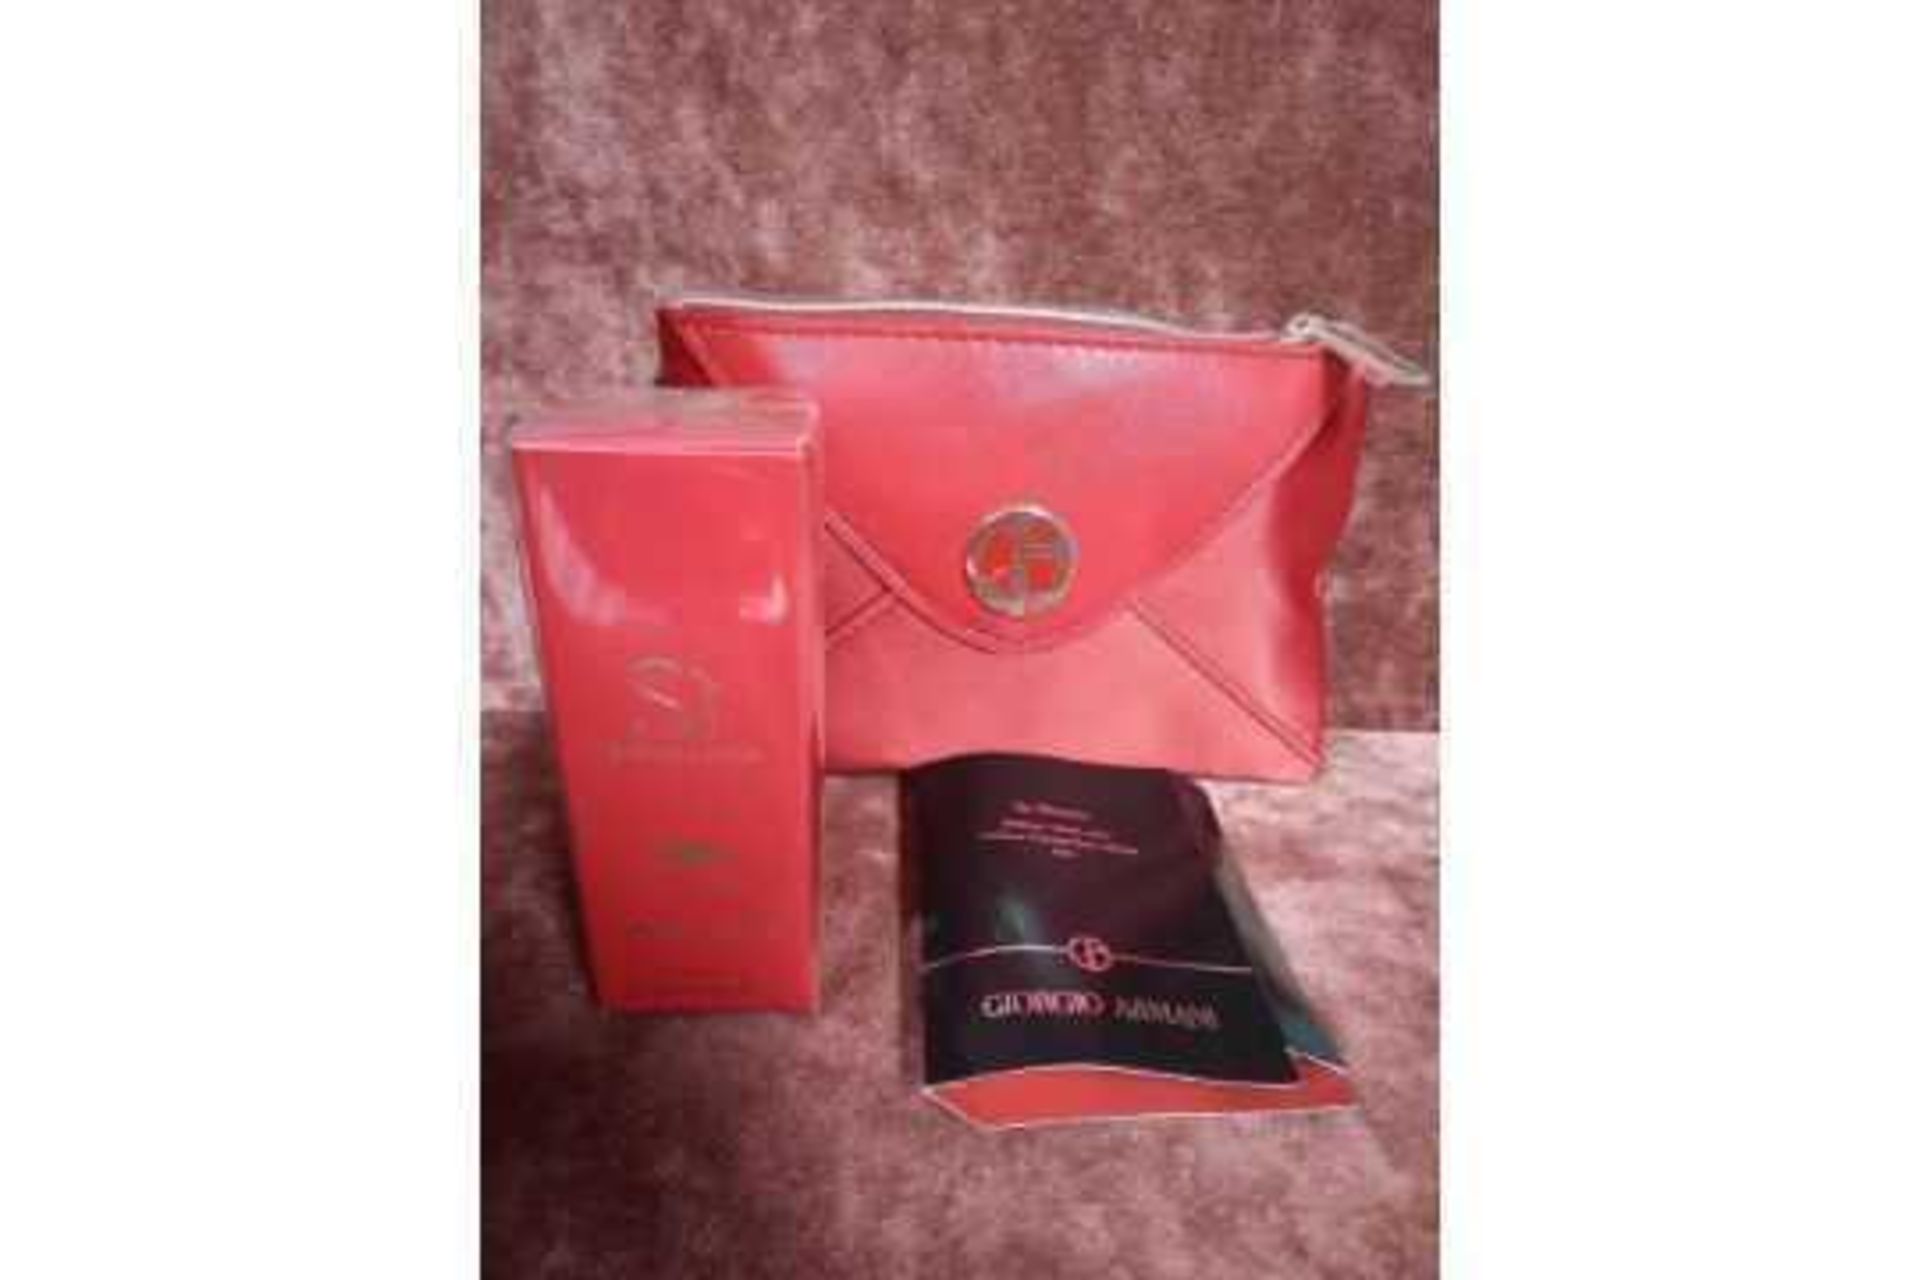 RRP £70 Brand New Giorgio Armani Beauty Si Passione Intense Gift Set To Contain Giorgio Armani Red P - Image 3 of 4